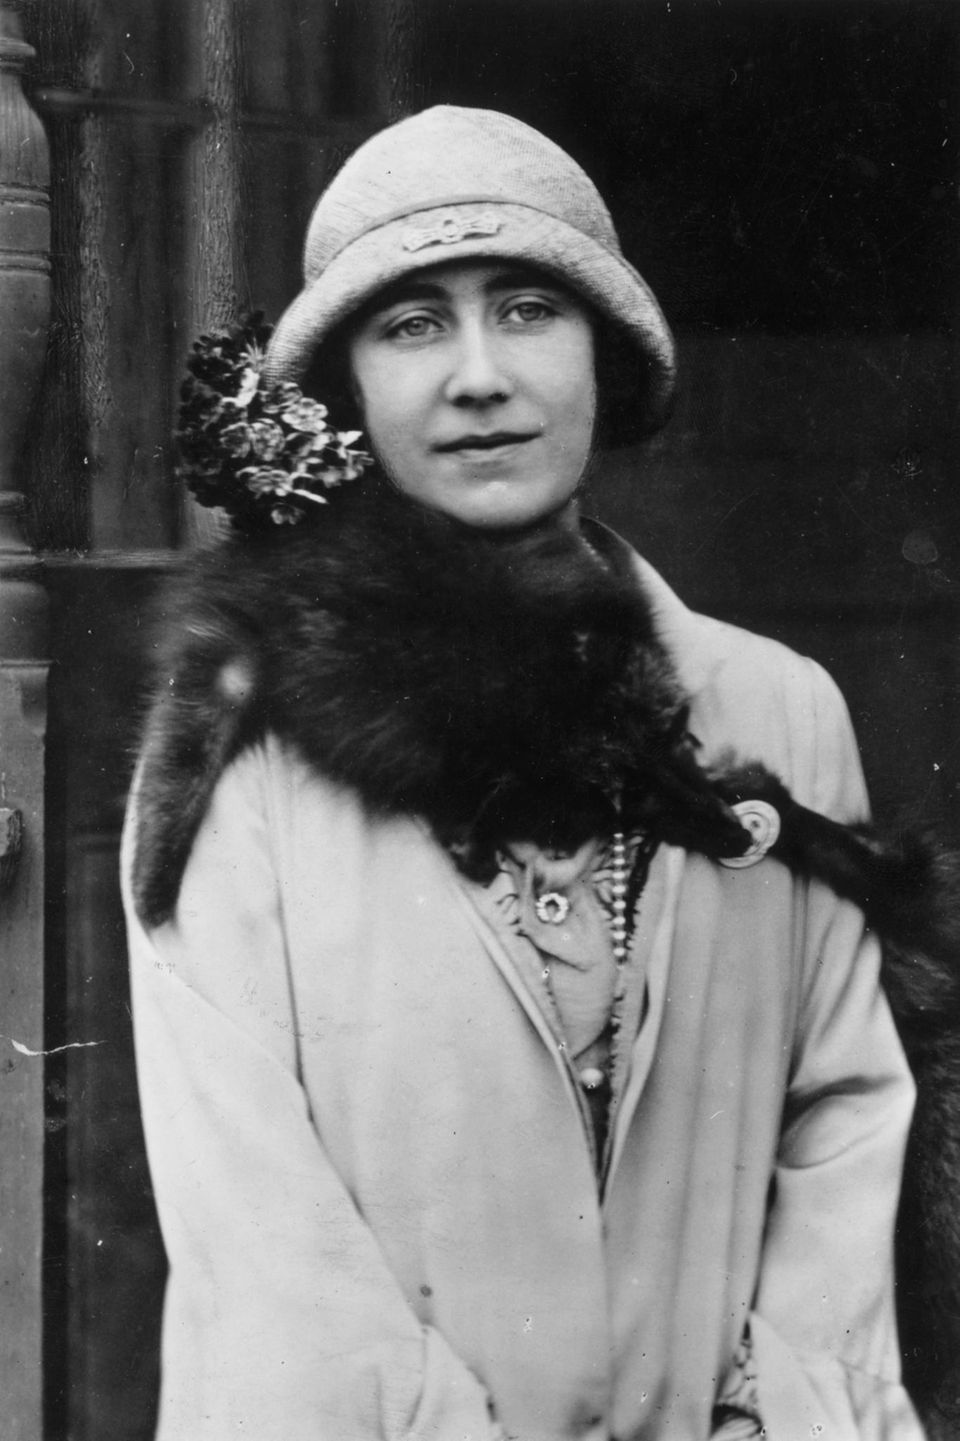 Auf einem Bild von Queen Mum im Jahr 1929 ist die Diamantbrosche in Hufeisenform an ihrem Halstuch zu erkennen. Heute trägt die kleinen Prinzessin Charlotte das Schmuckstück. 